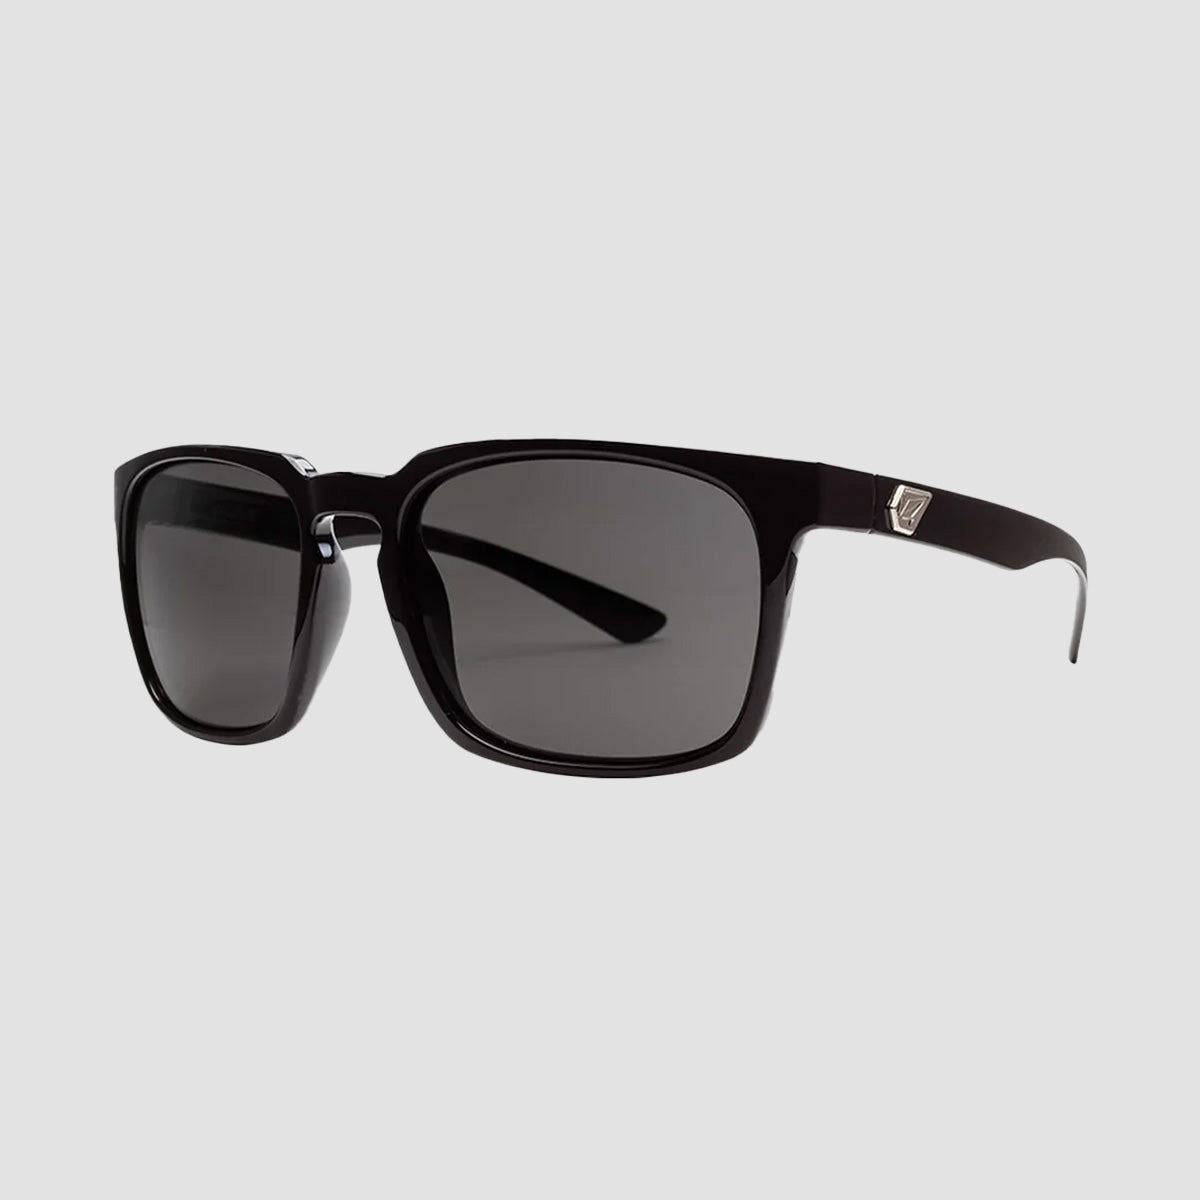 Volcom Alive Sunglasses Gloss Black/Grey